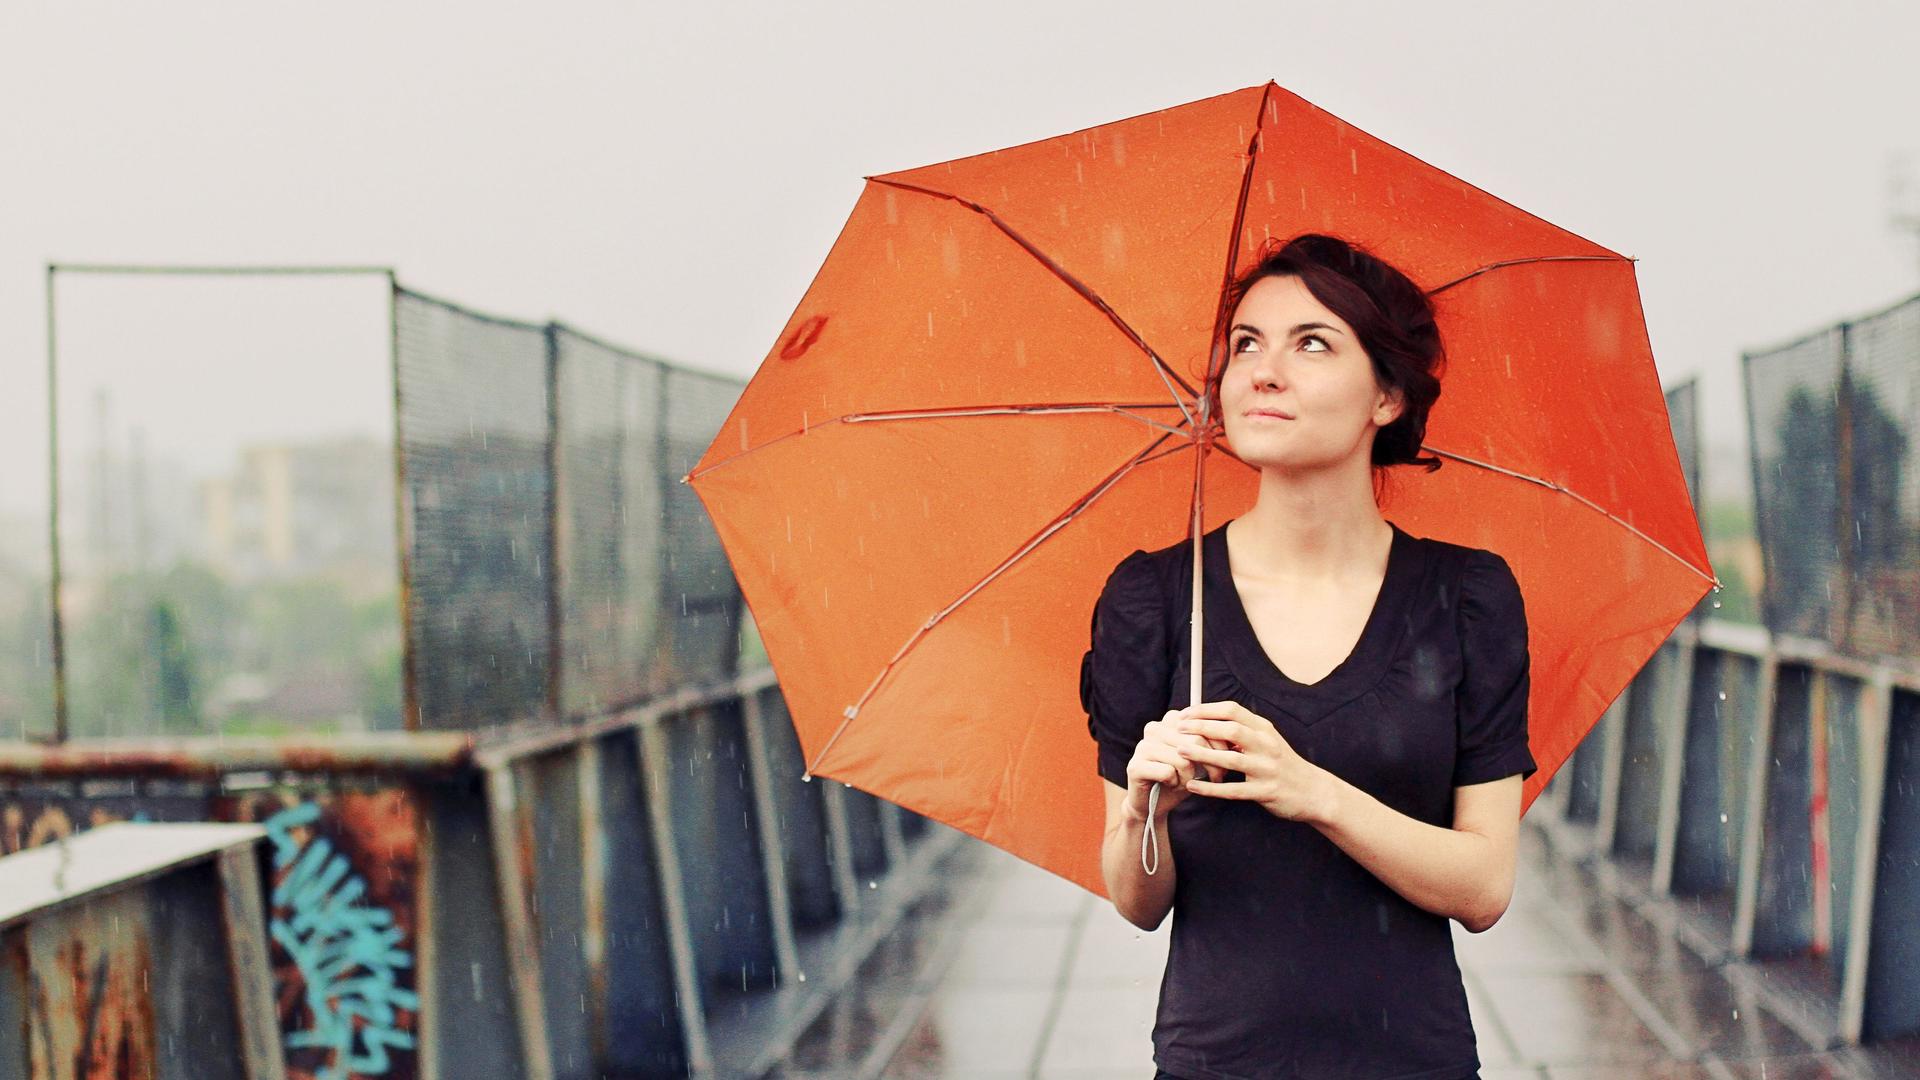 Junge Frau mit orangefarbenem Regenschirm im Regen auf einer Brücke.